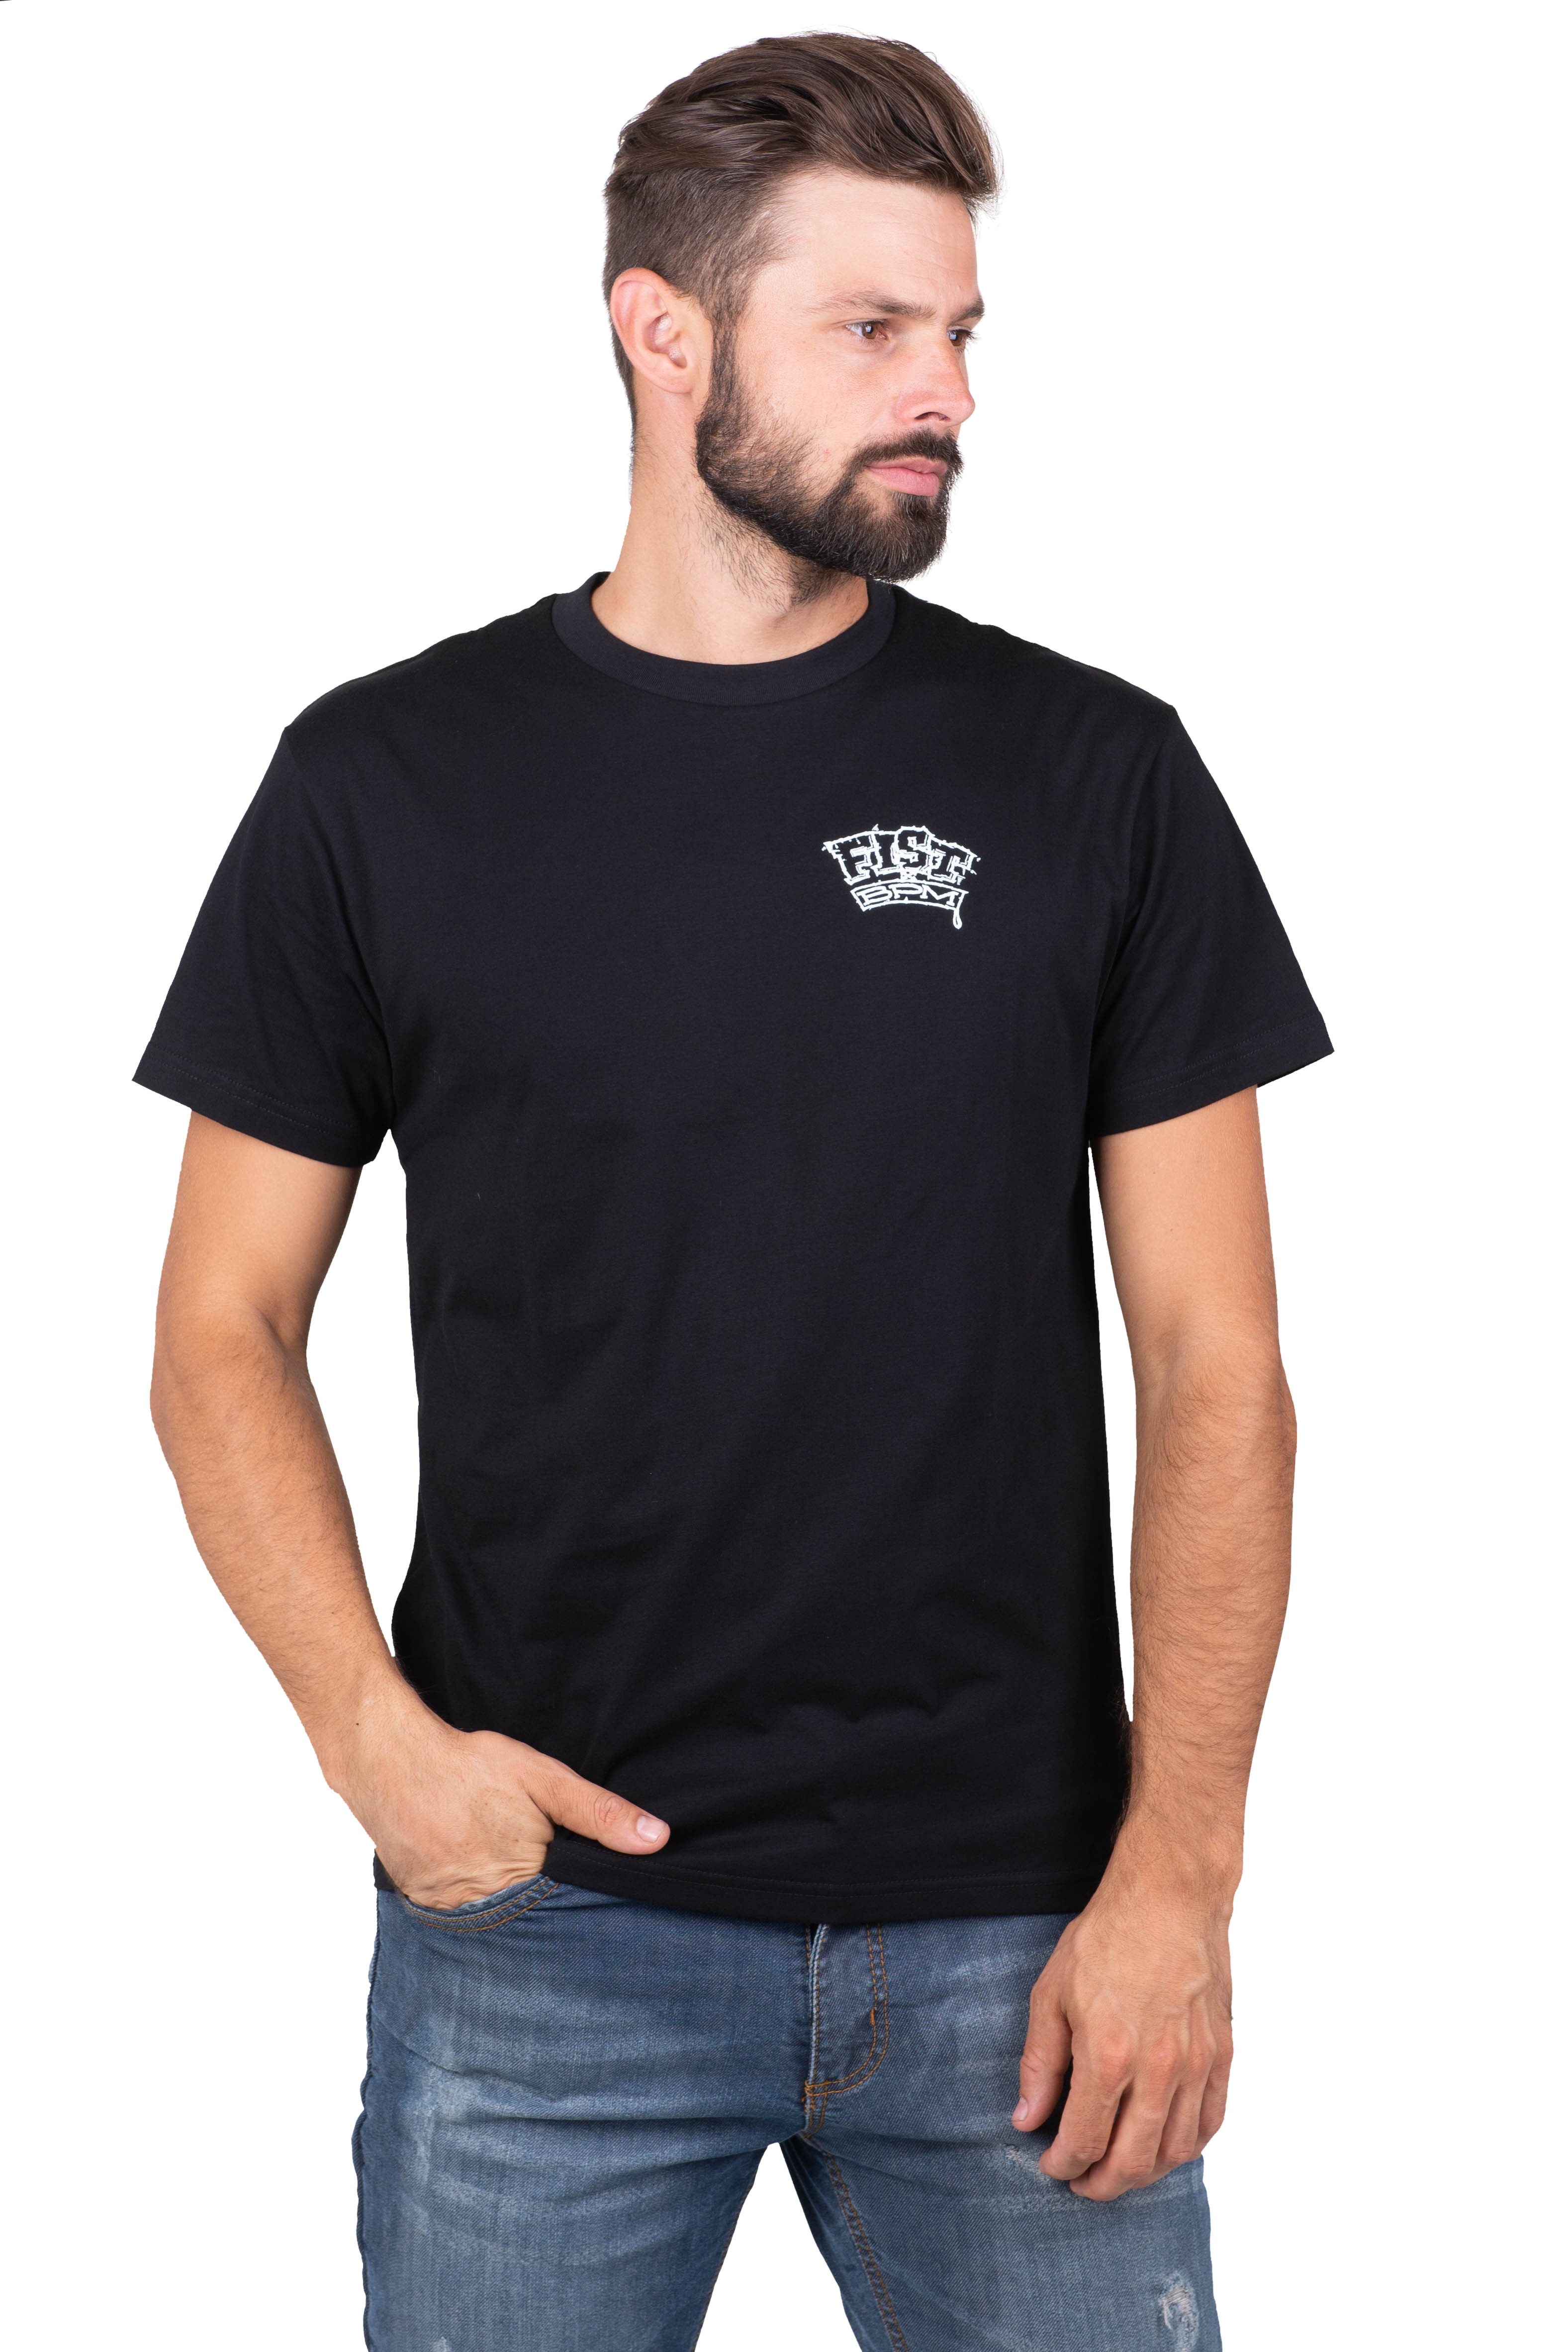 Fist T-Shirt  modello  X BPM in colore nero.